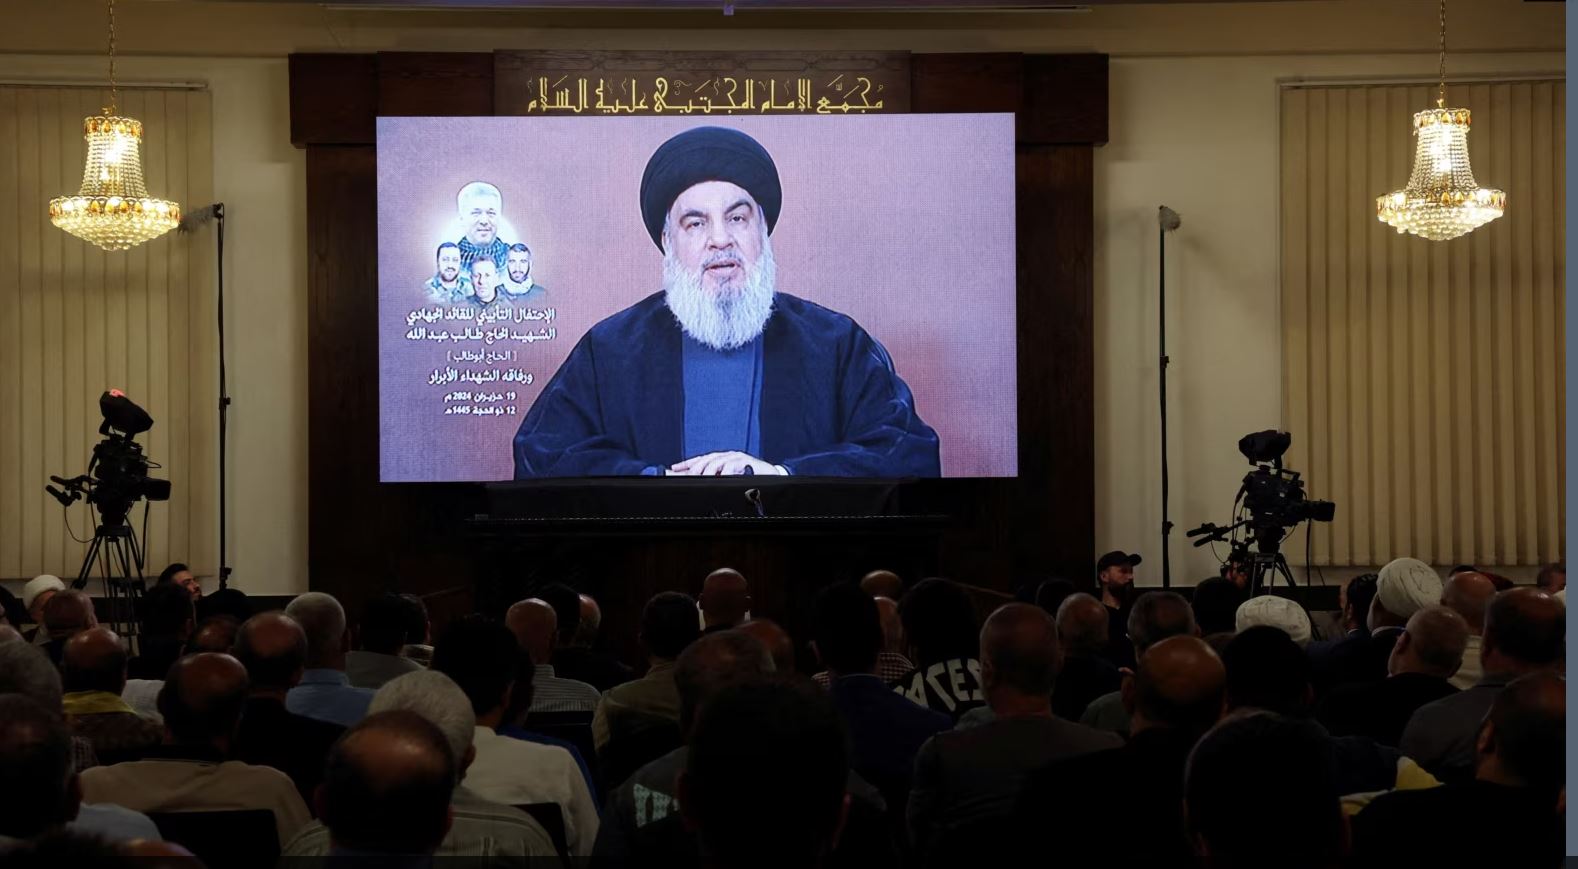 udheheqesi i hezbollahut ne liban paralajmeron izraelin kunder zgjerimit te luftes